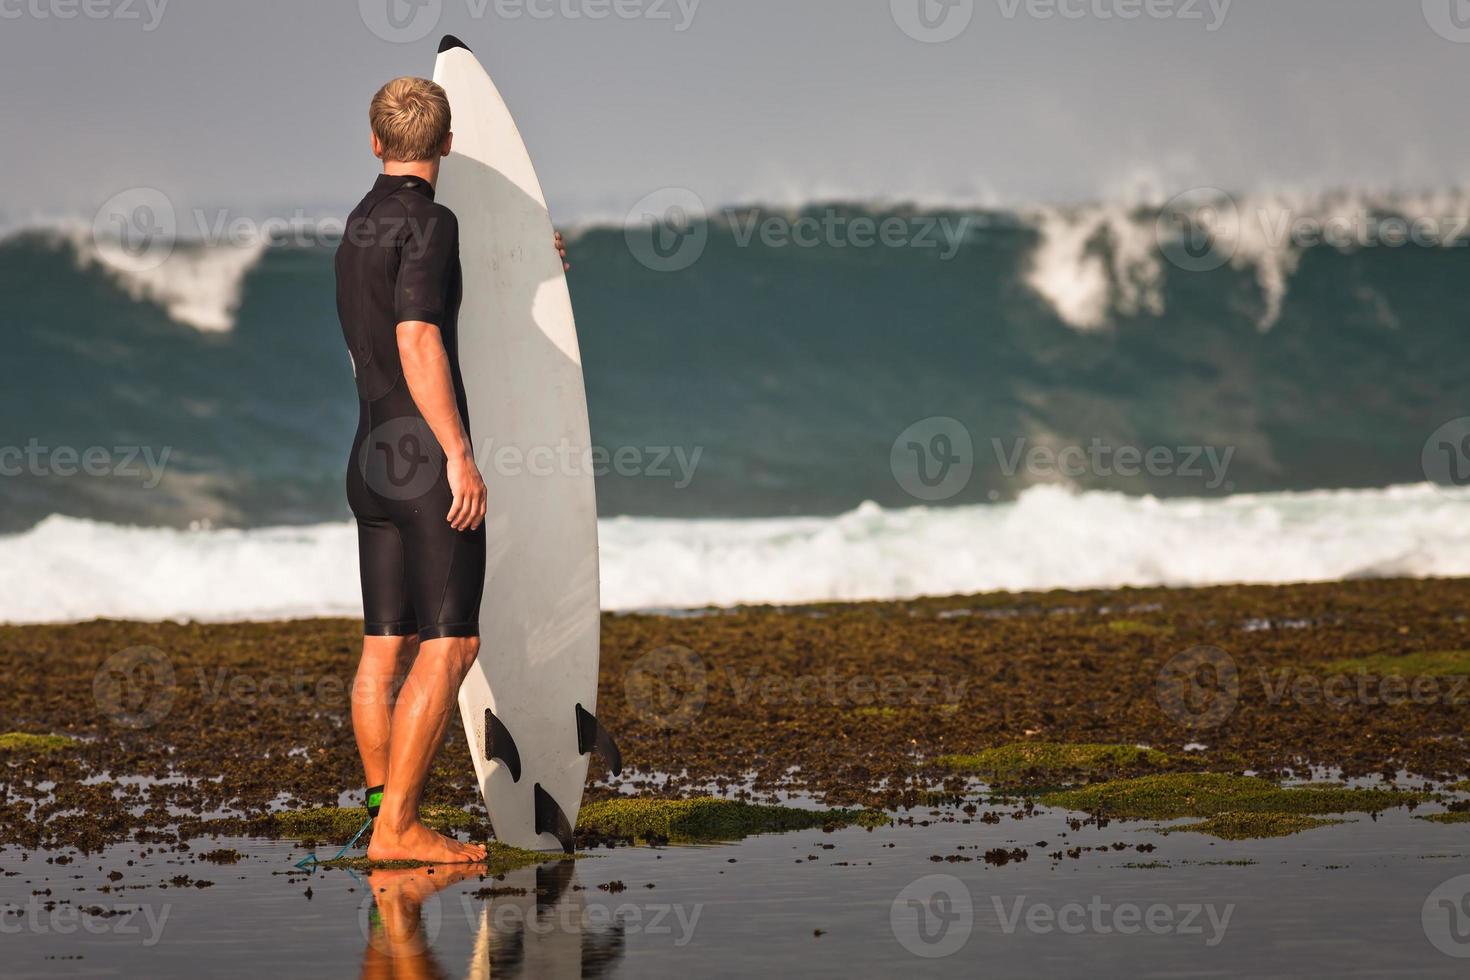 Surfer mit Surfbrett an der Küste foto